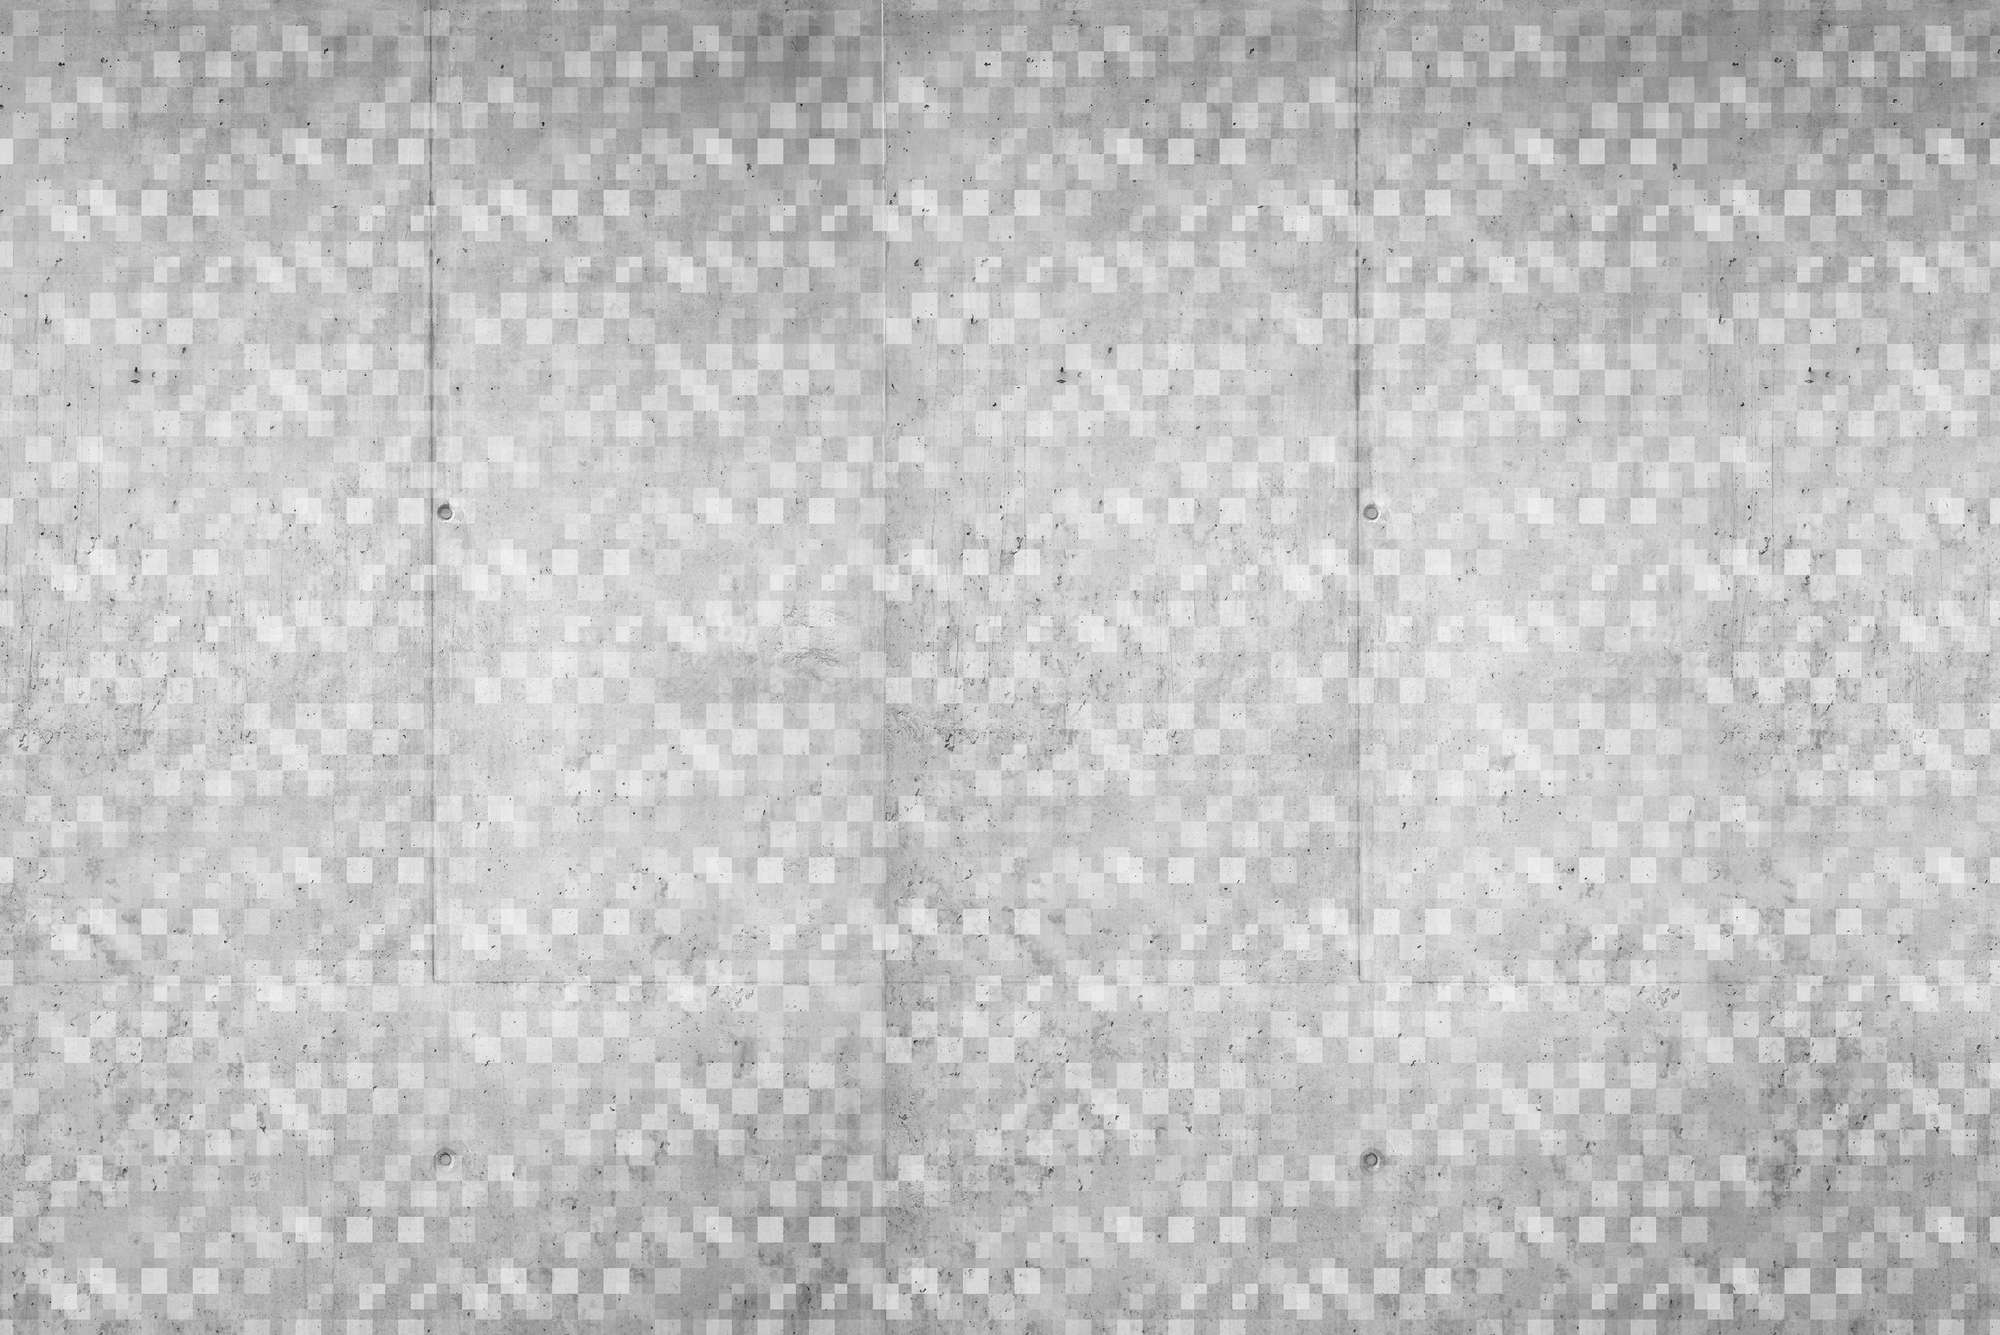             Carta da parati grafica con motivo a cubi sovrapposti di colore grigio su pregiato pile liscio
        